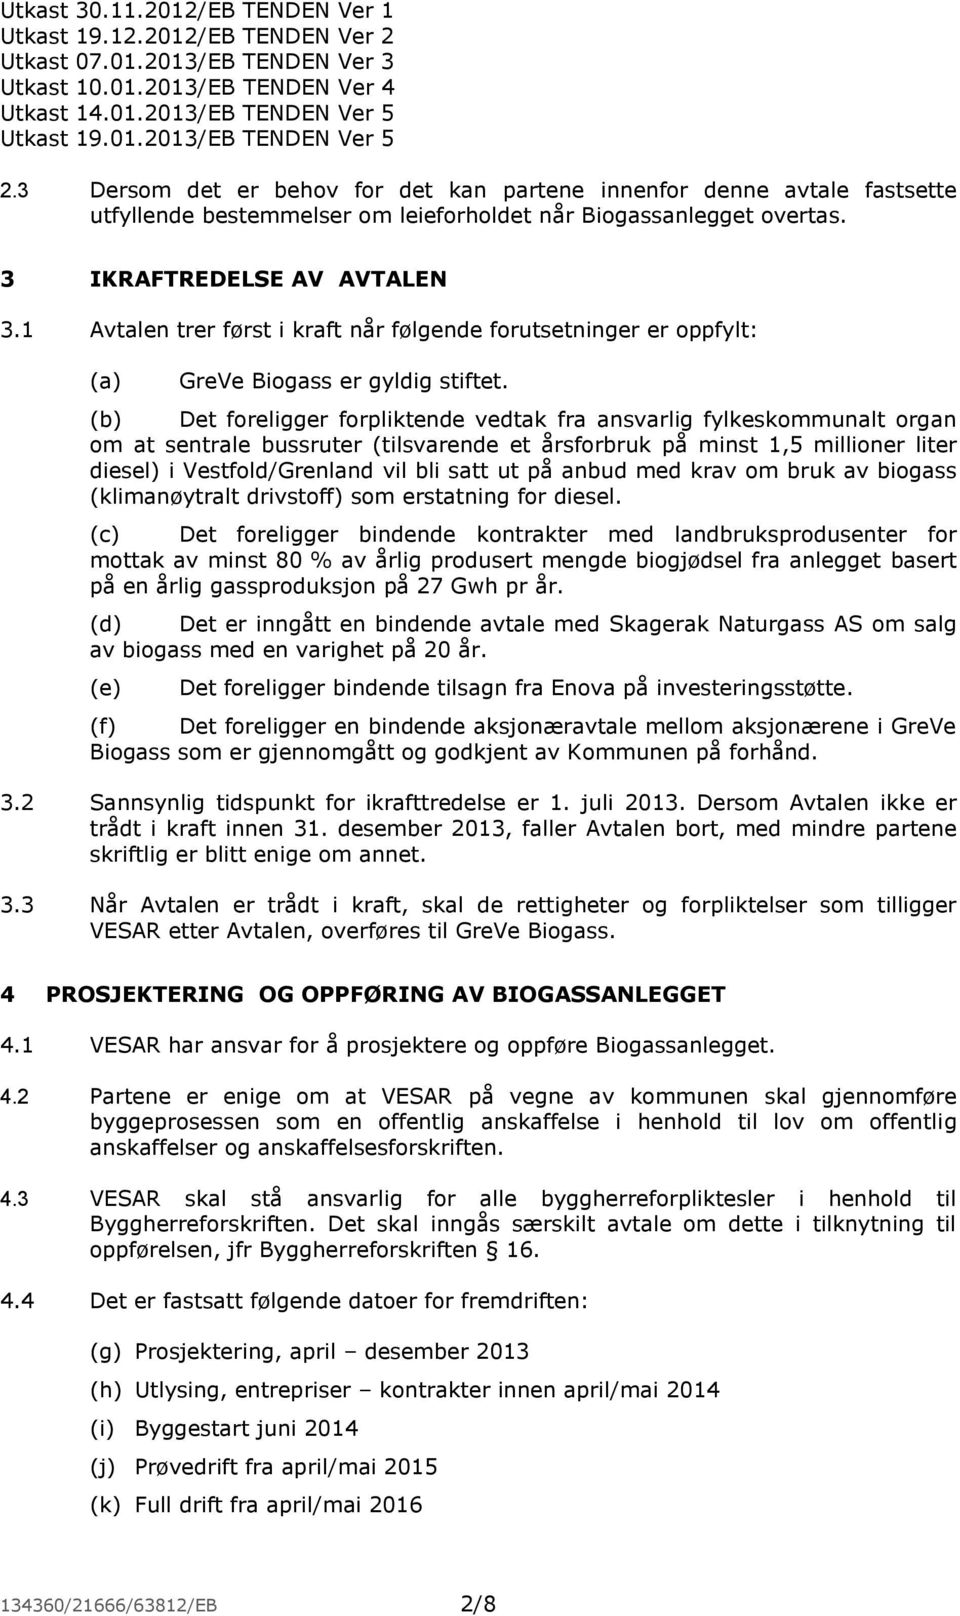 (b) Det foreligger forpliktende vedtak fra ansvarlig fylkeskommunalt organ om at sentrale bussruter (tilsvarende et årsforbruk på minst 1,5 millioner liter diesel) i Vestfold/Grenland vil bli satt ut